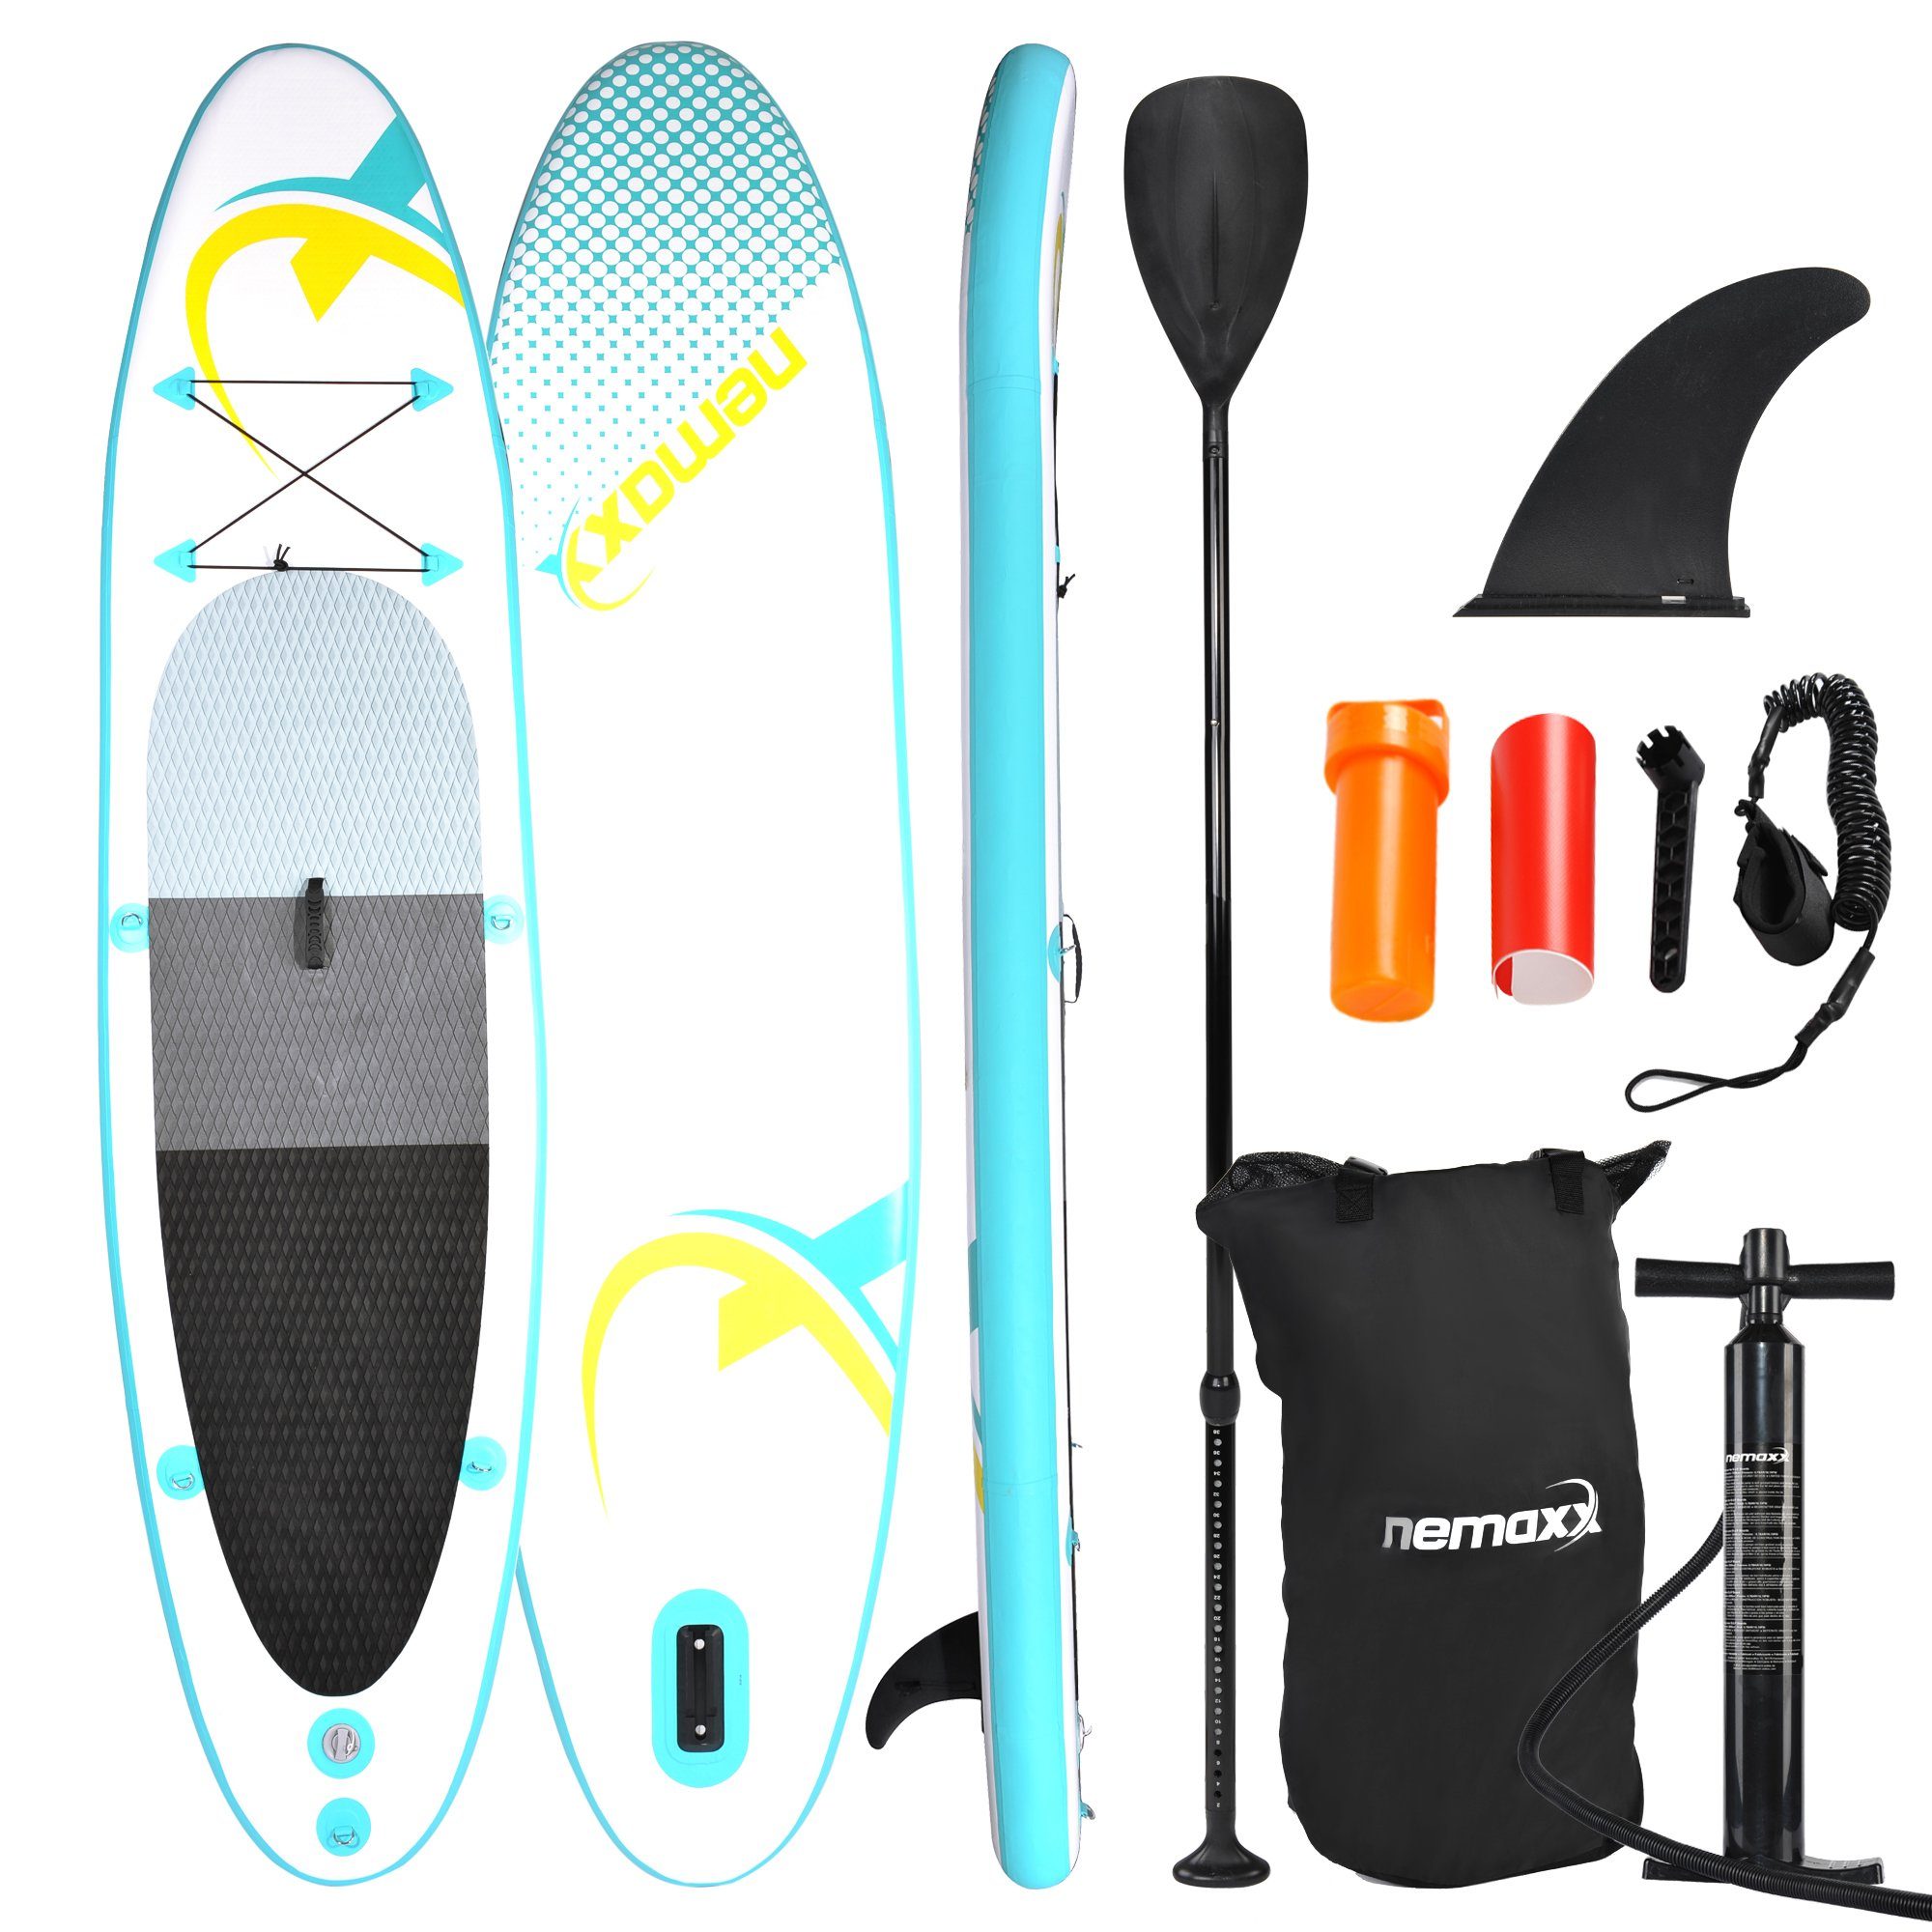 NEMAXX Inflatable SUP-Board, Nemaxx PB320 Stand up Paddle Board 320x78x15cm, türkis/gelb - Surfbrett, Surf-Board - aufblasbar & leicht zu transportieren - inkl. Tasche, Paddel